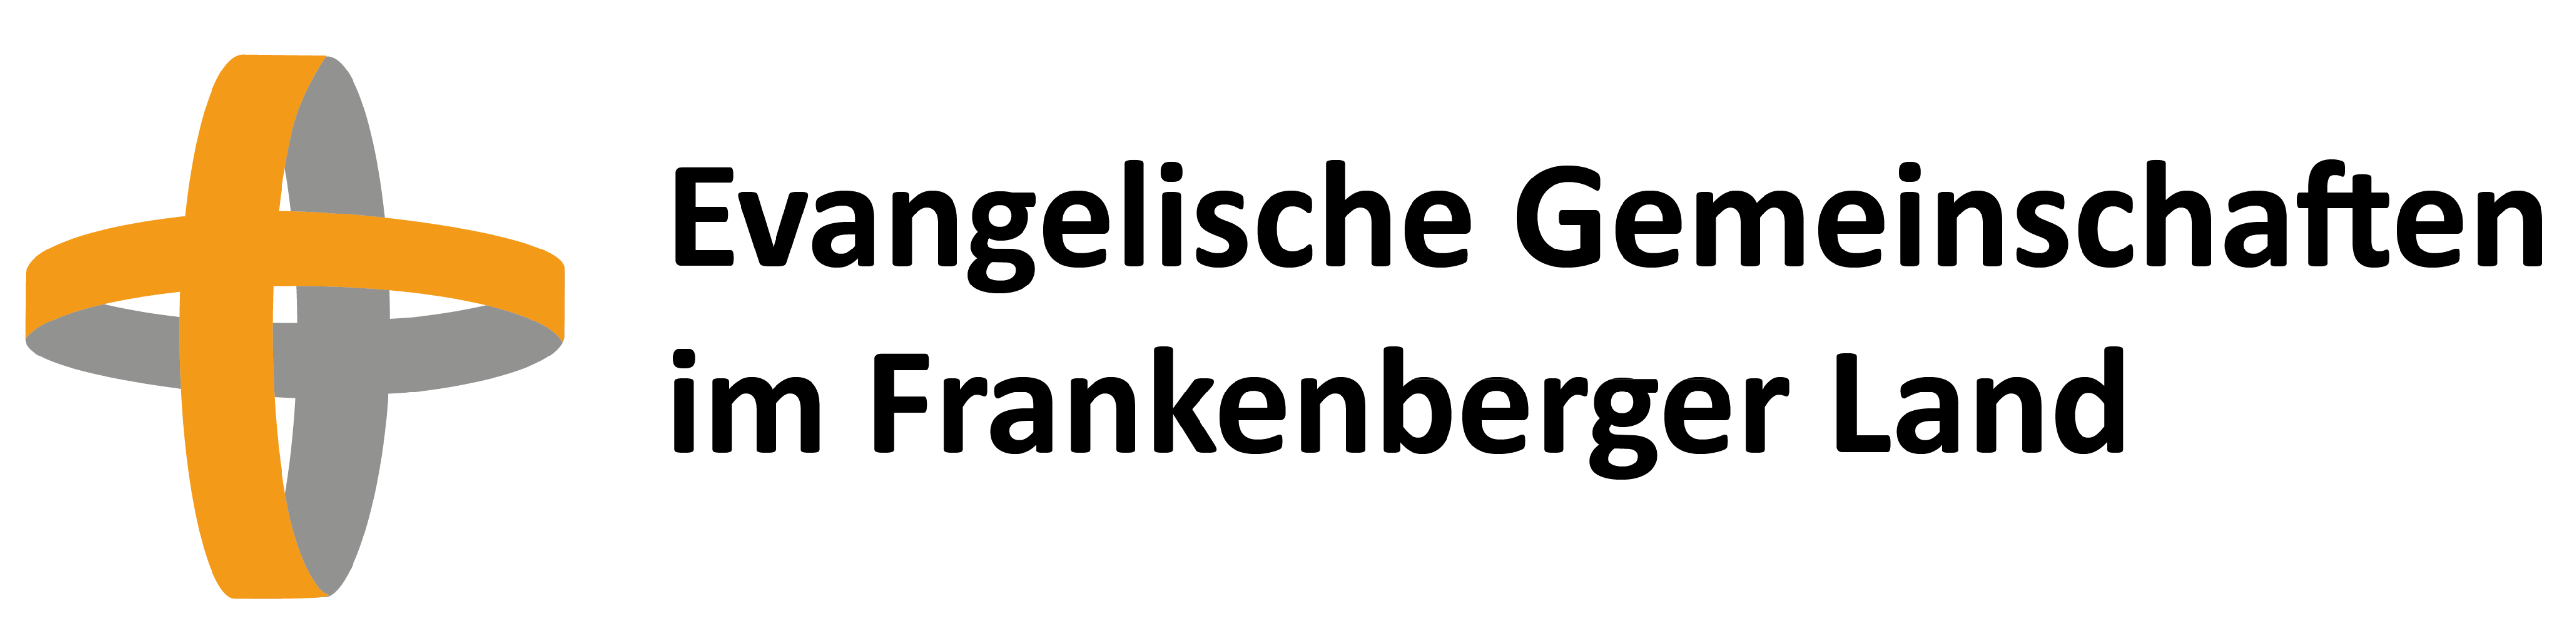 Evangelische Gemeinschaften Frankenberg Eder